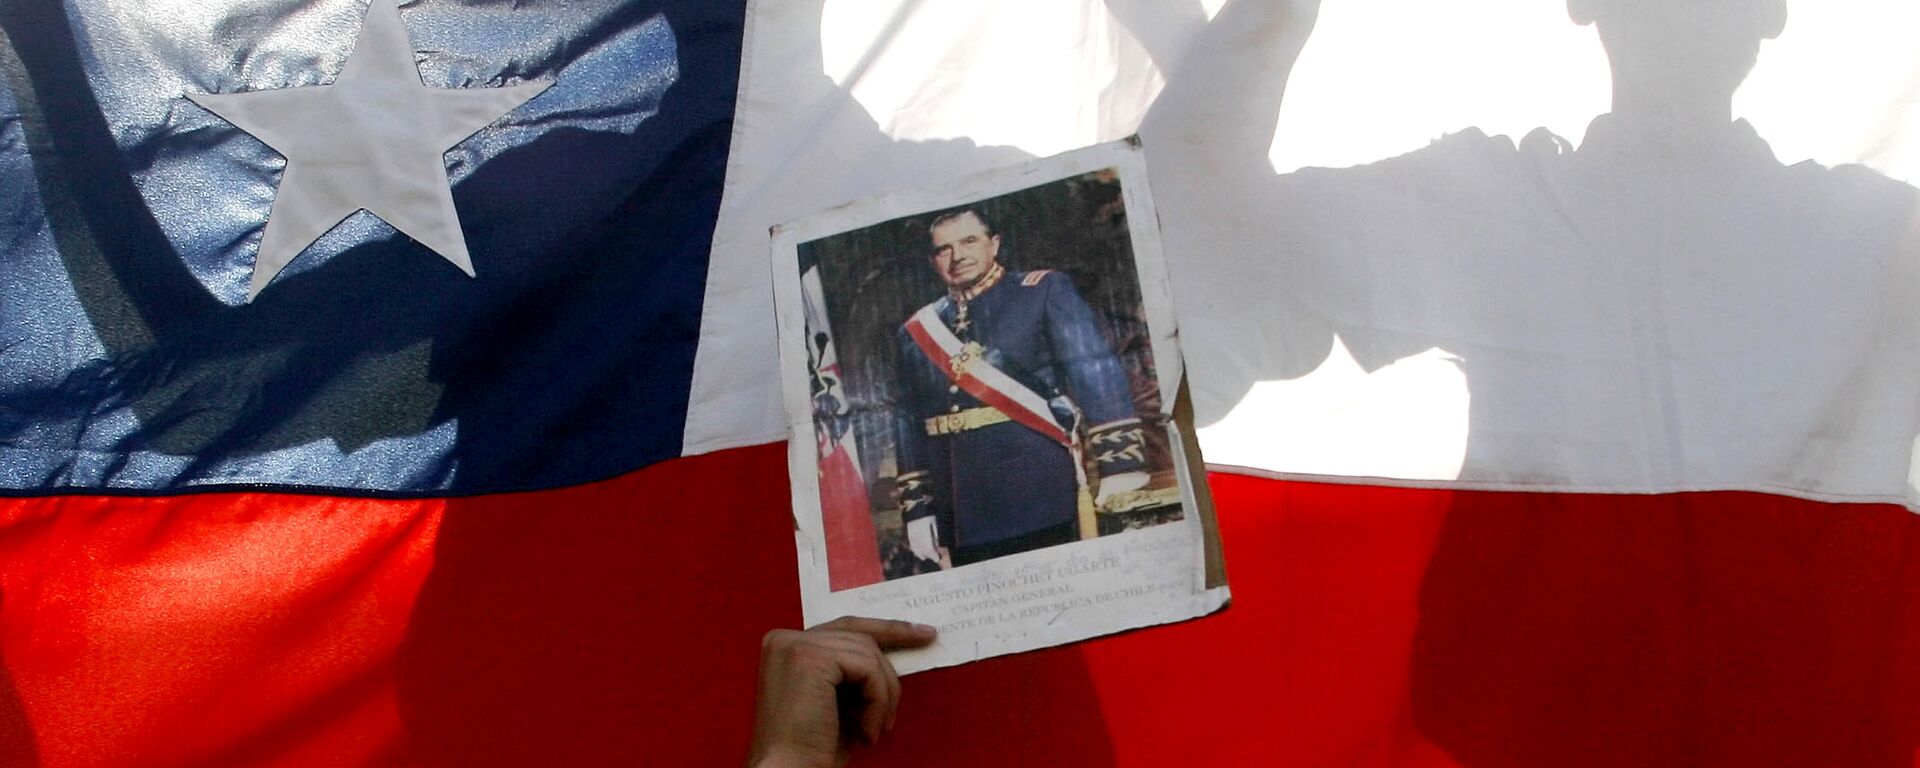 Una foto de Pinochet con bandera chilena del fondo - Sputnik Mundo, 1920, 30.12.2020